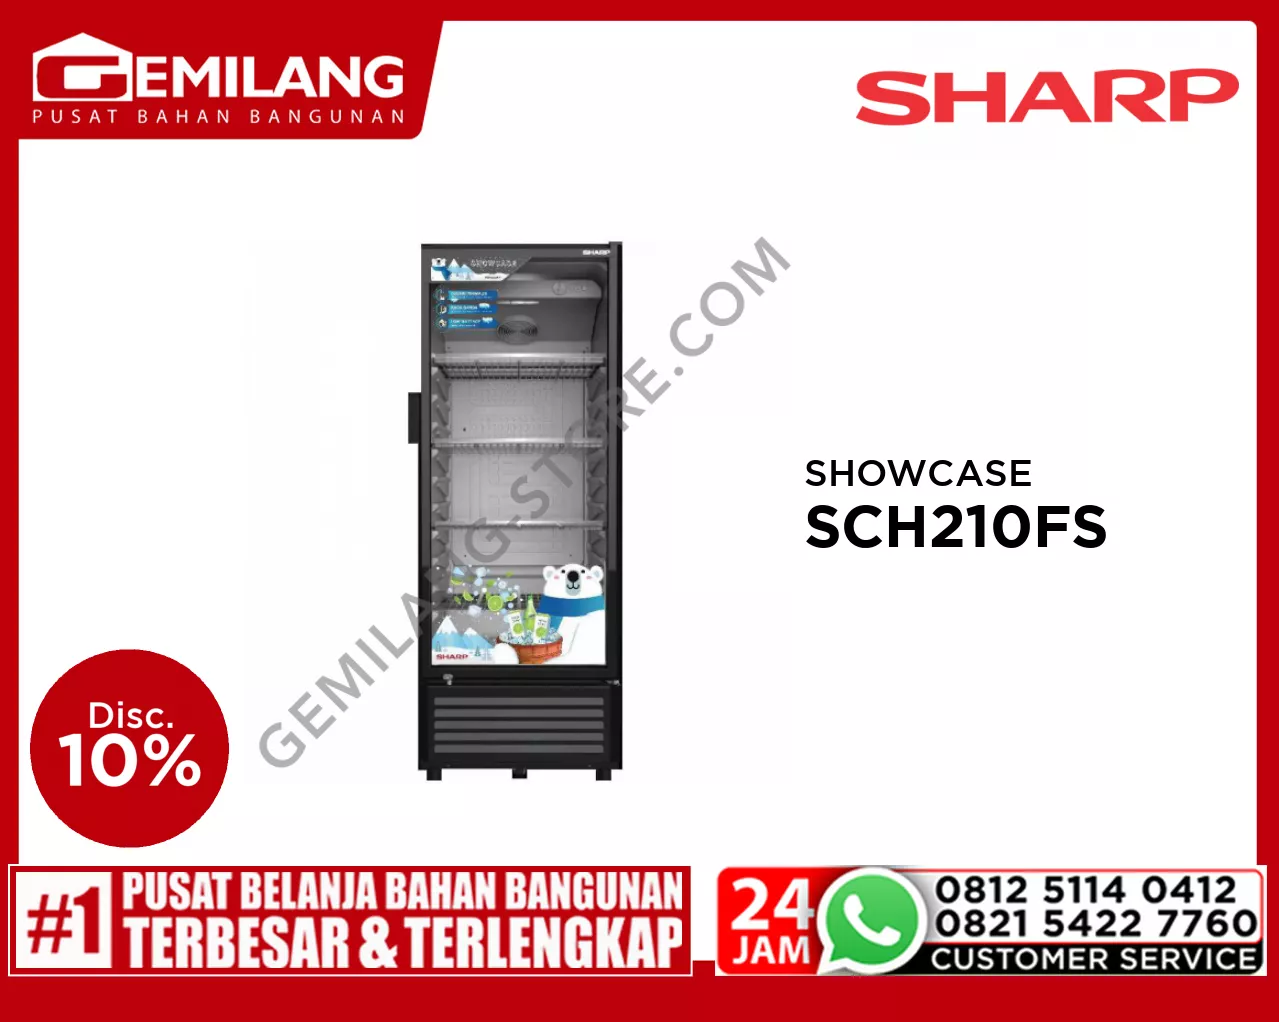 SHARP SHOWCASE SCH 210FS